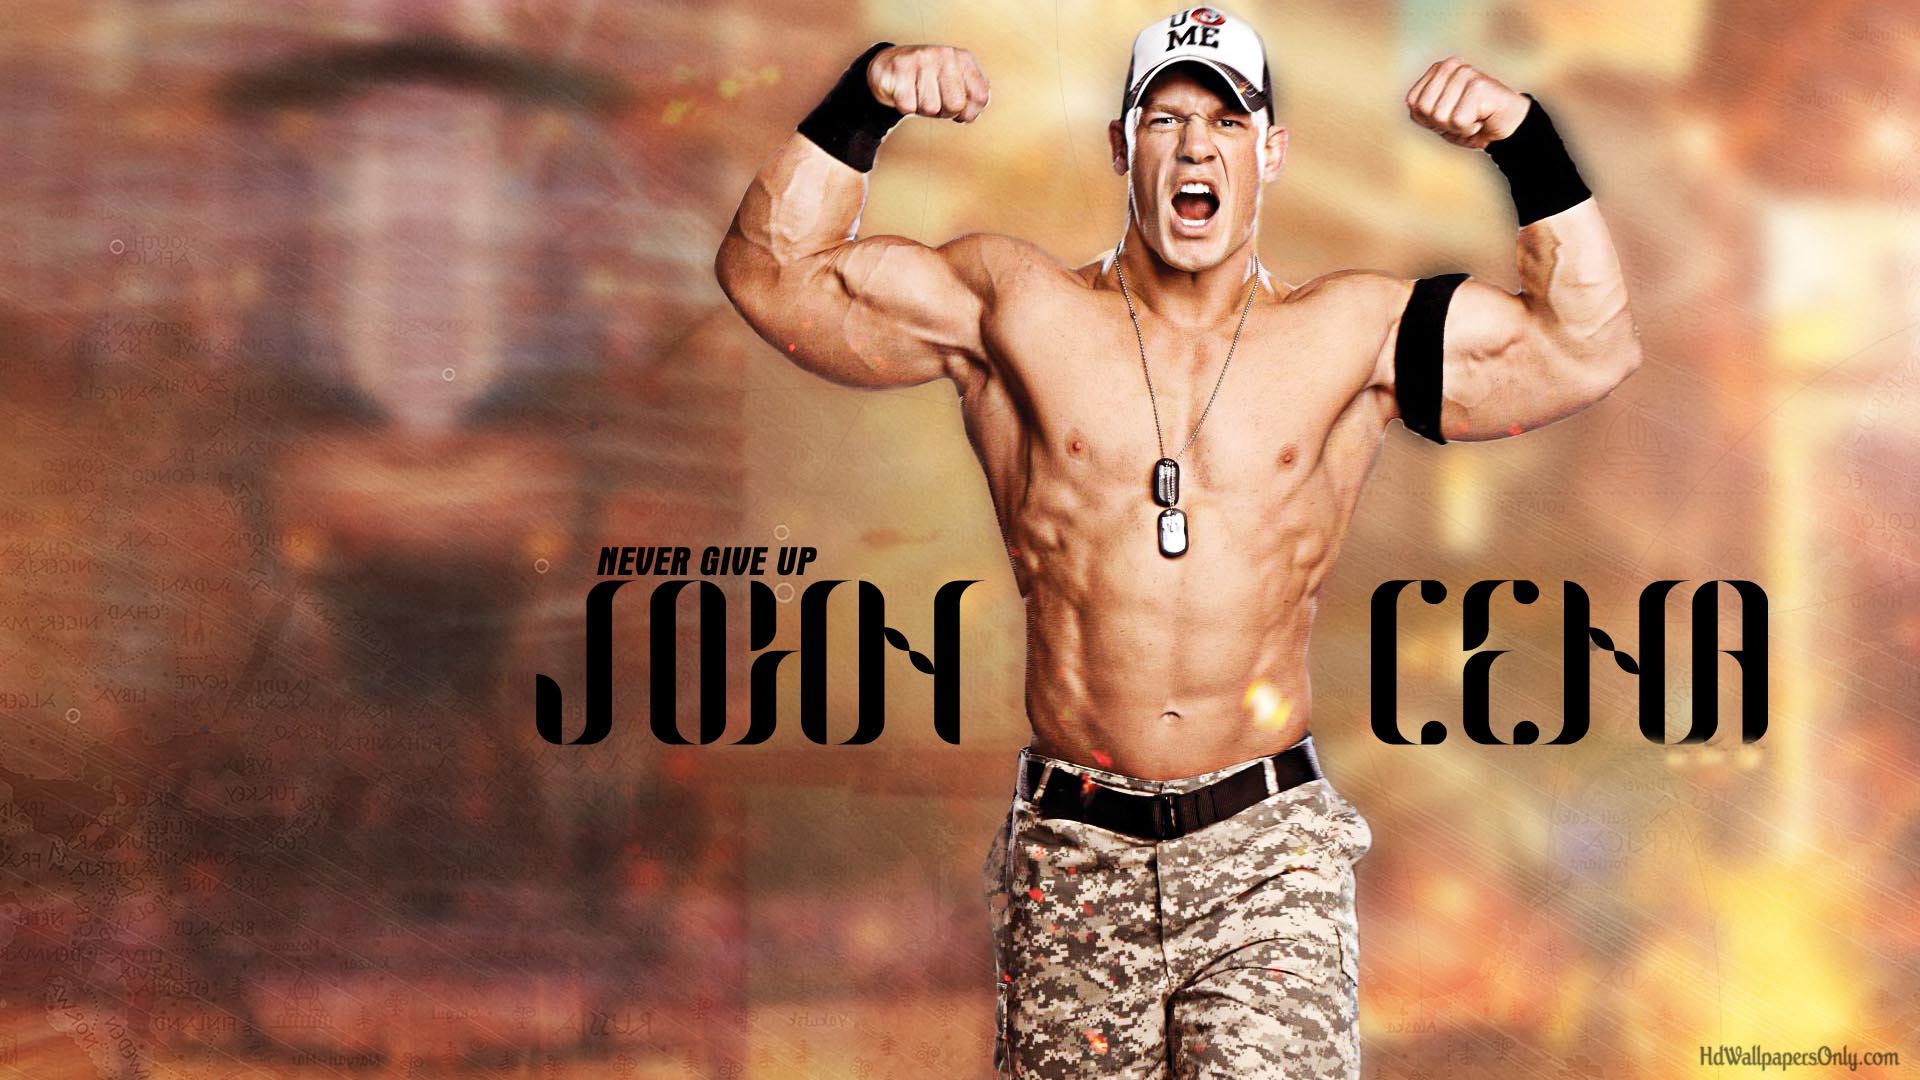 John Cena HD wallpaper 2014 Wallpaper OnlyHD Wallpaper Only